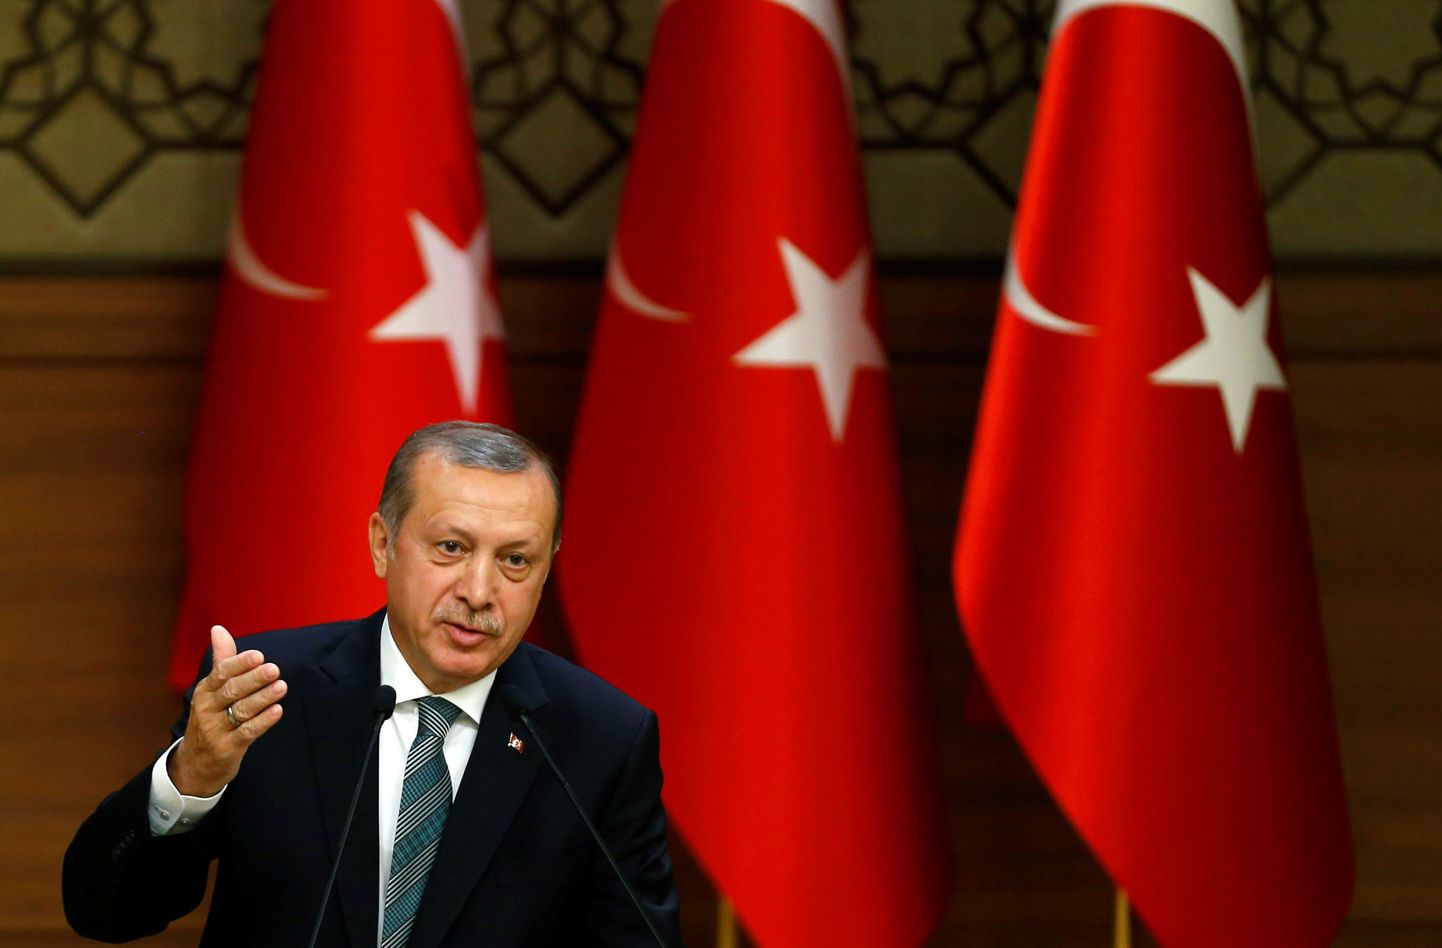 Türgi president Recep Tayyip Erdoğan